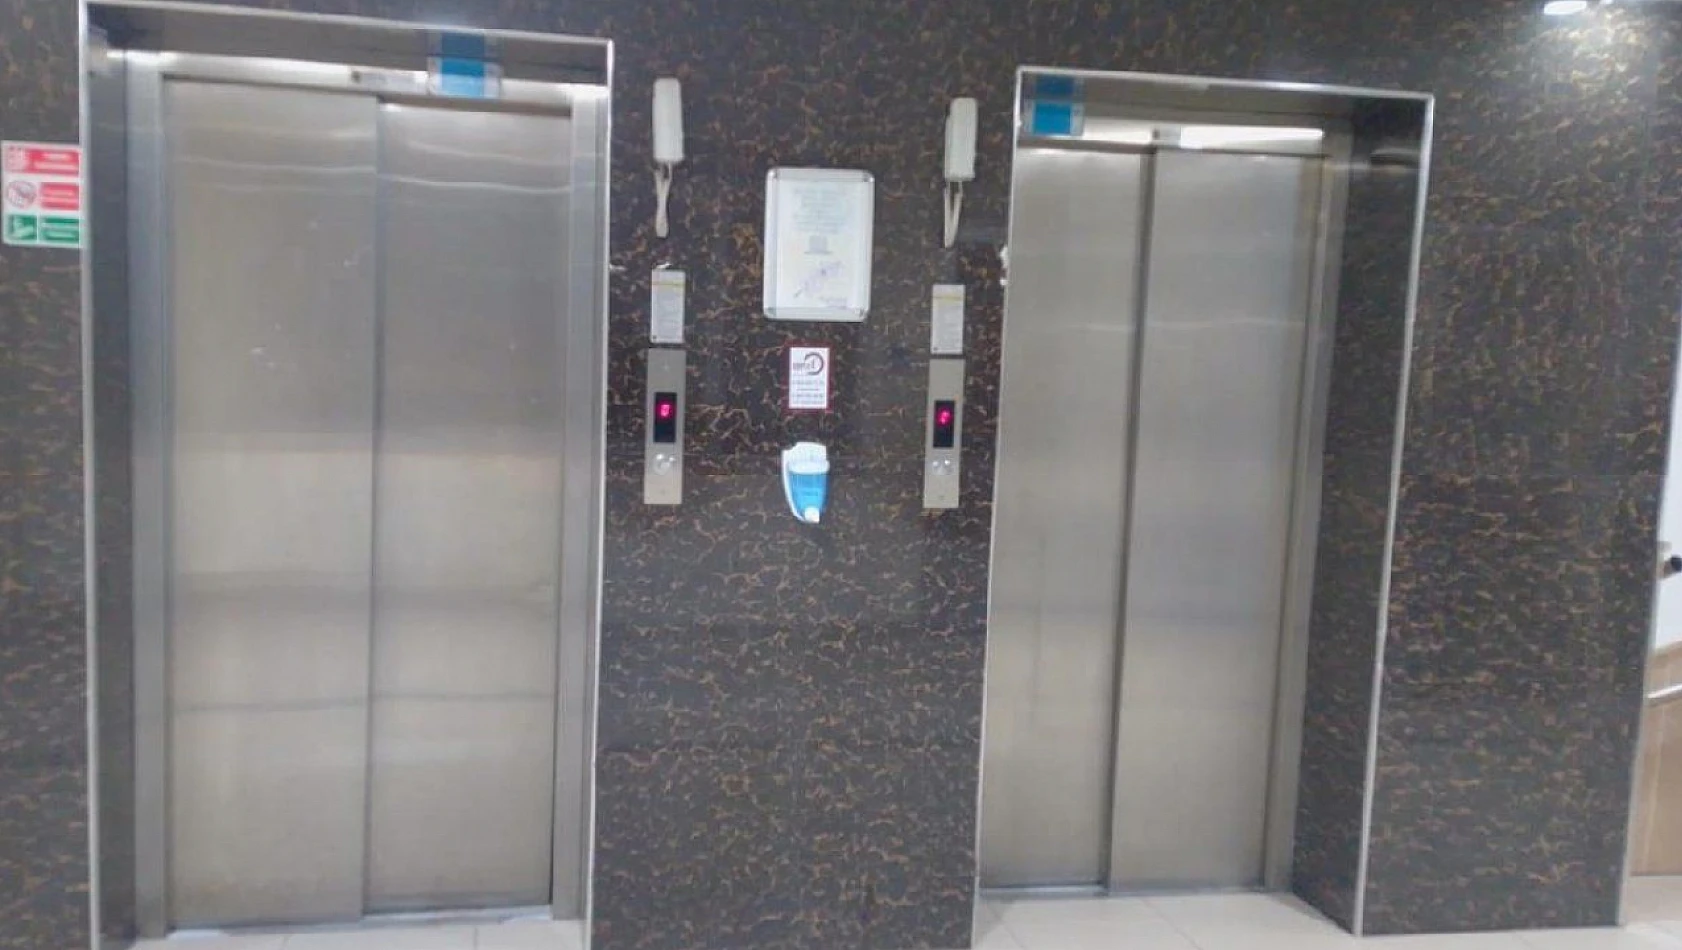 KYK Yurtlarında yeni dönem  Asansörlere karekod uygulaması geliyor